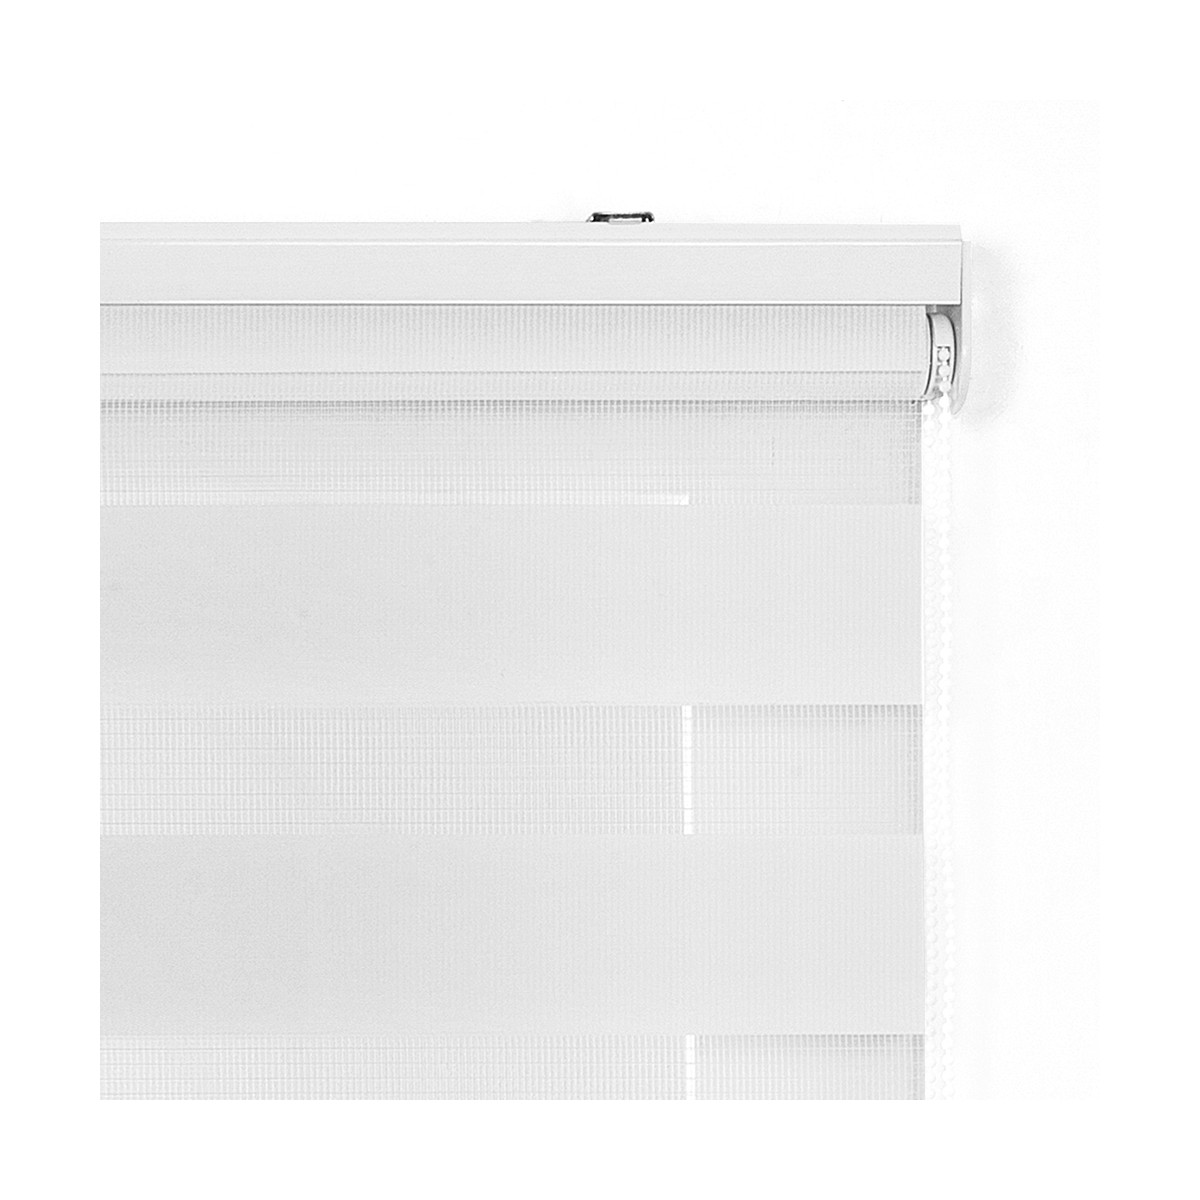 Estor enrollable Día / Noche (75 x 180 cm) Blanco - Cortina/Visillo/ Estor  - Eminza